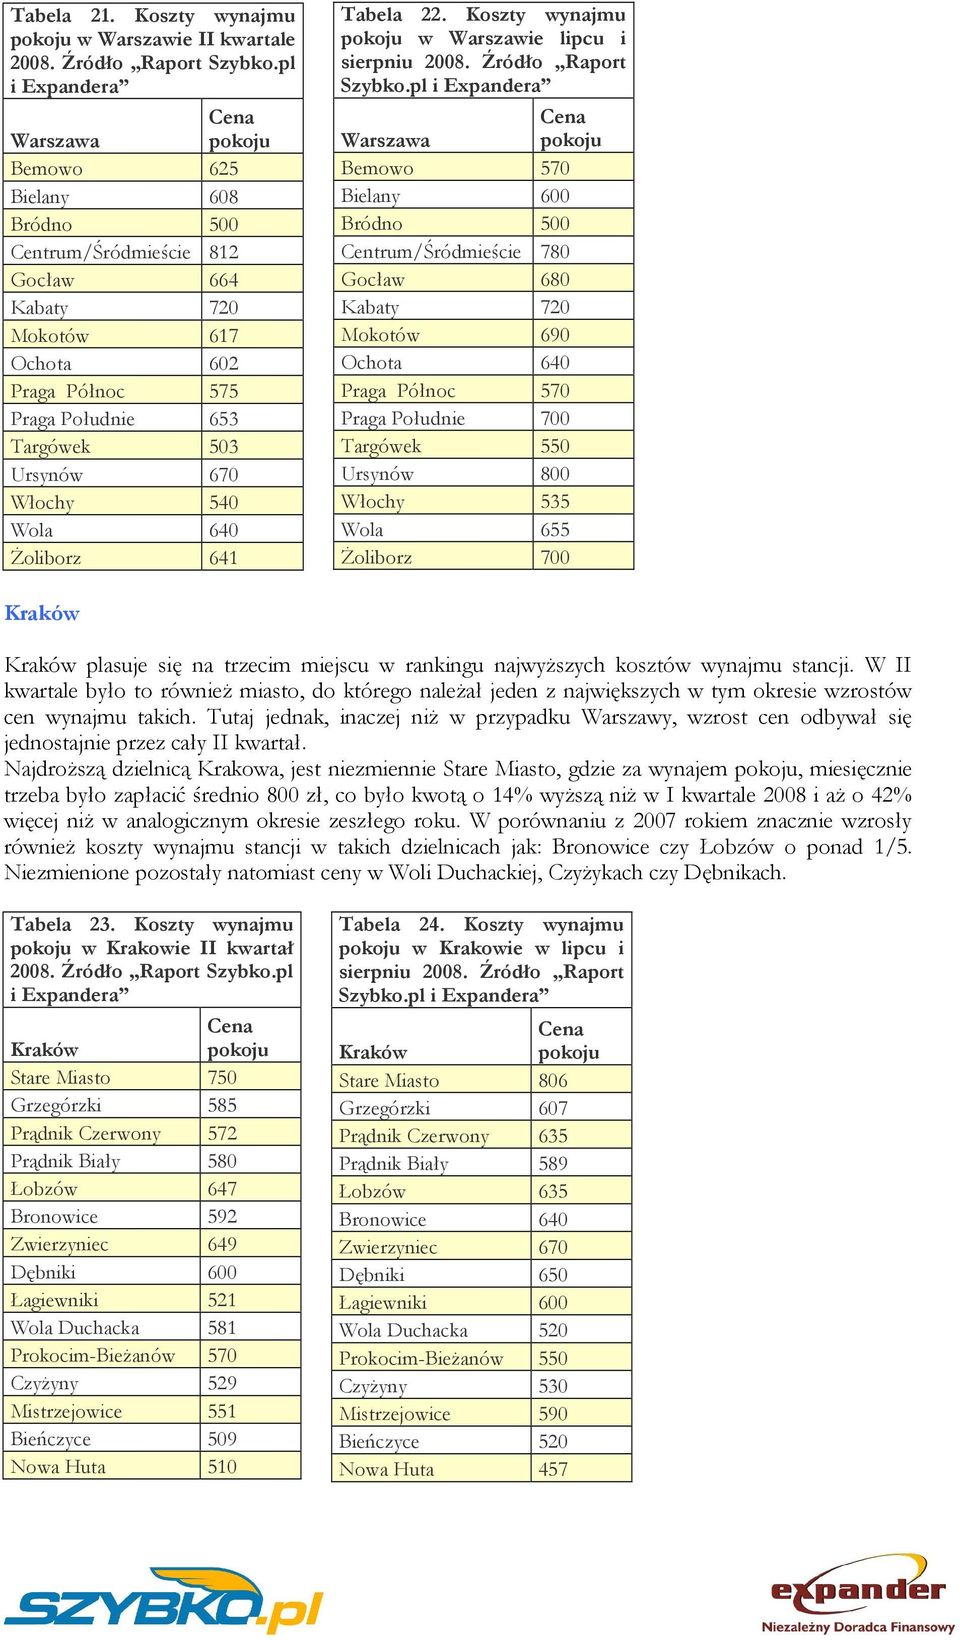 Wola 640 Żoliborz 641 Tabela 22. Koszty wynajmu w Warszawie lipcu i sierpniu 2008. Źródło Raport Szybko.